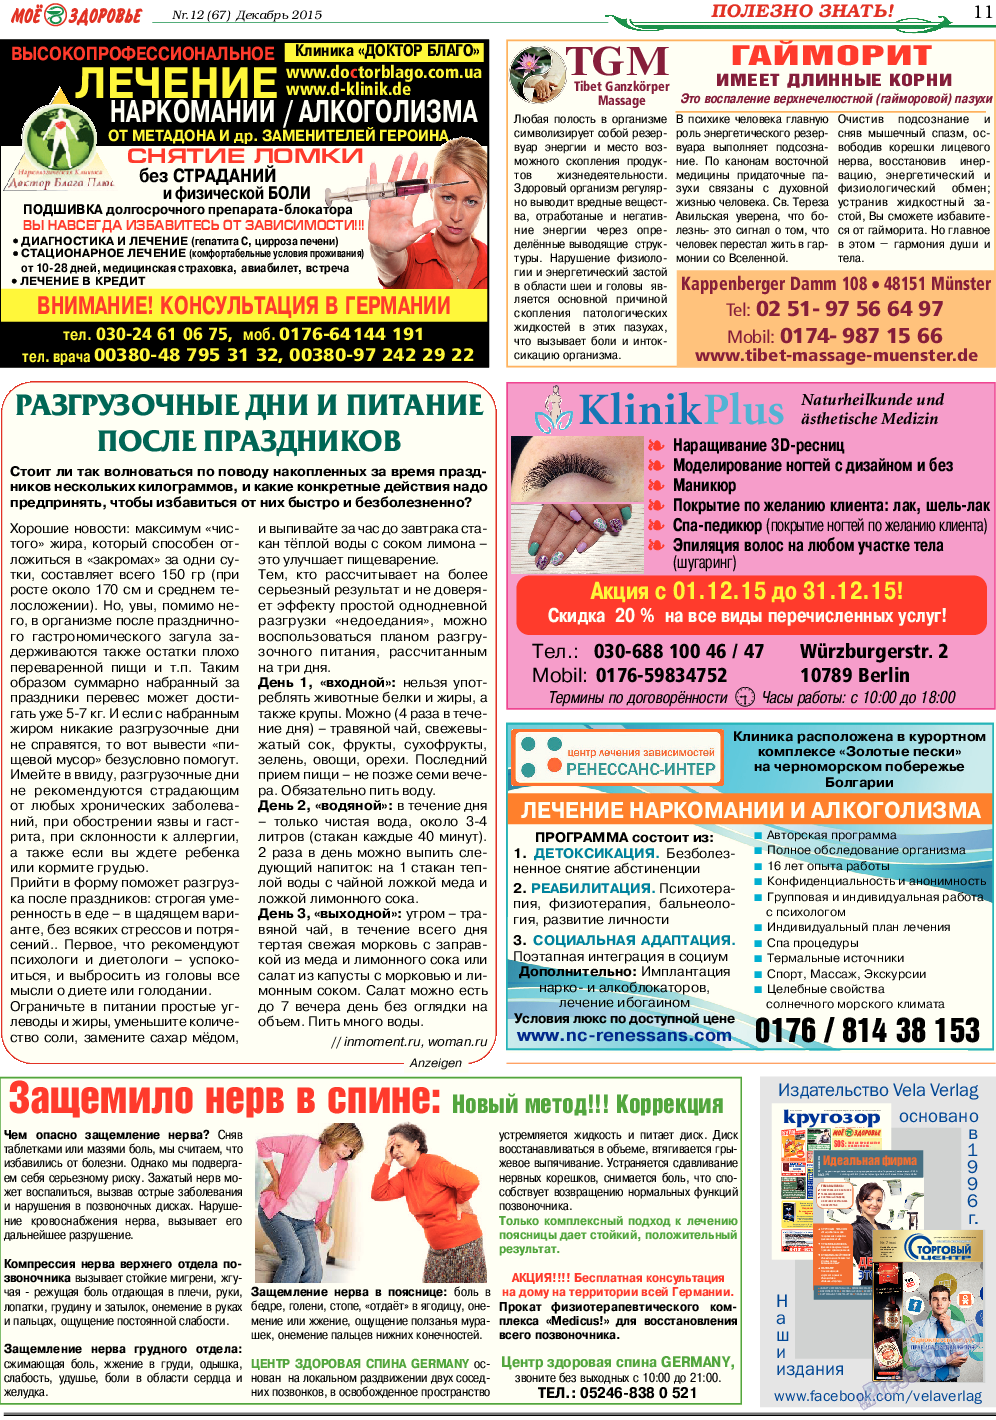 Кругозор (газета). 2015 год, номер 12, стр. 11